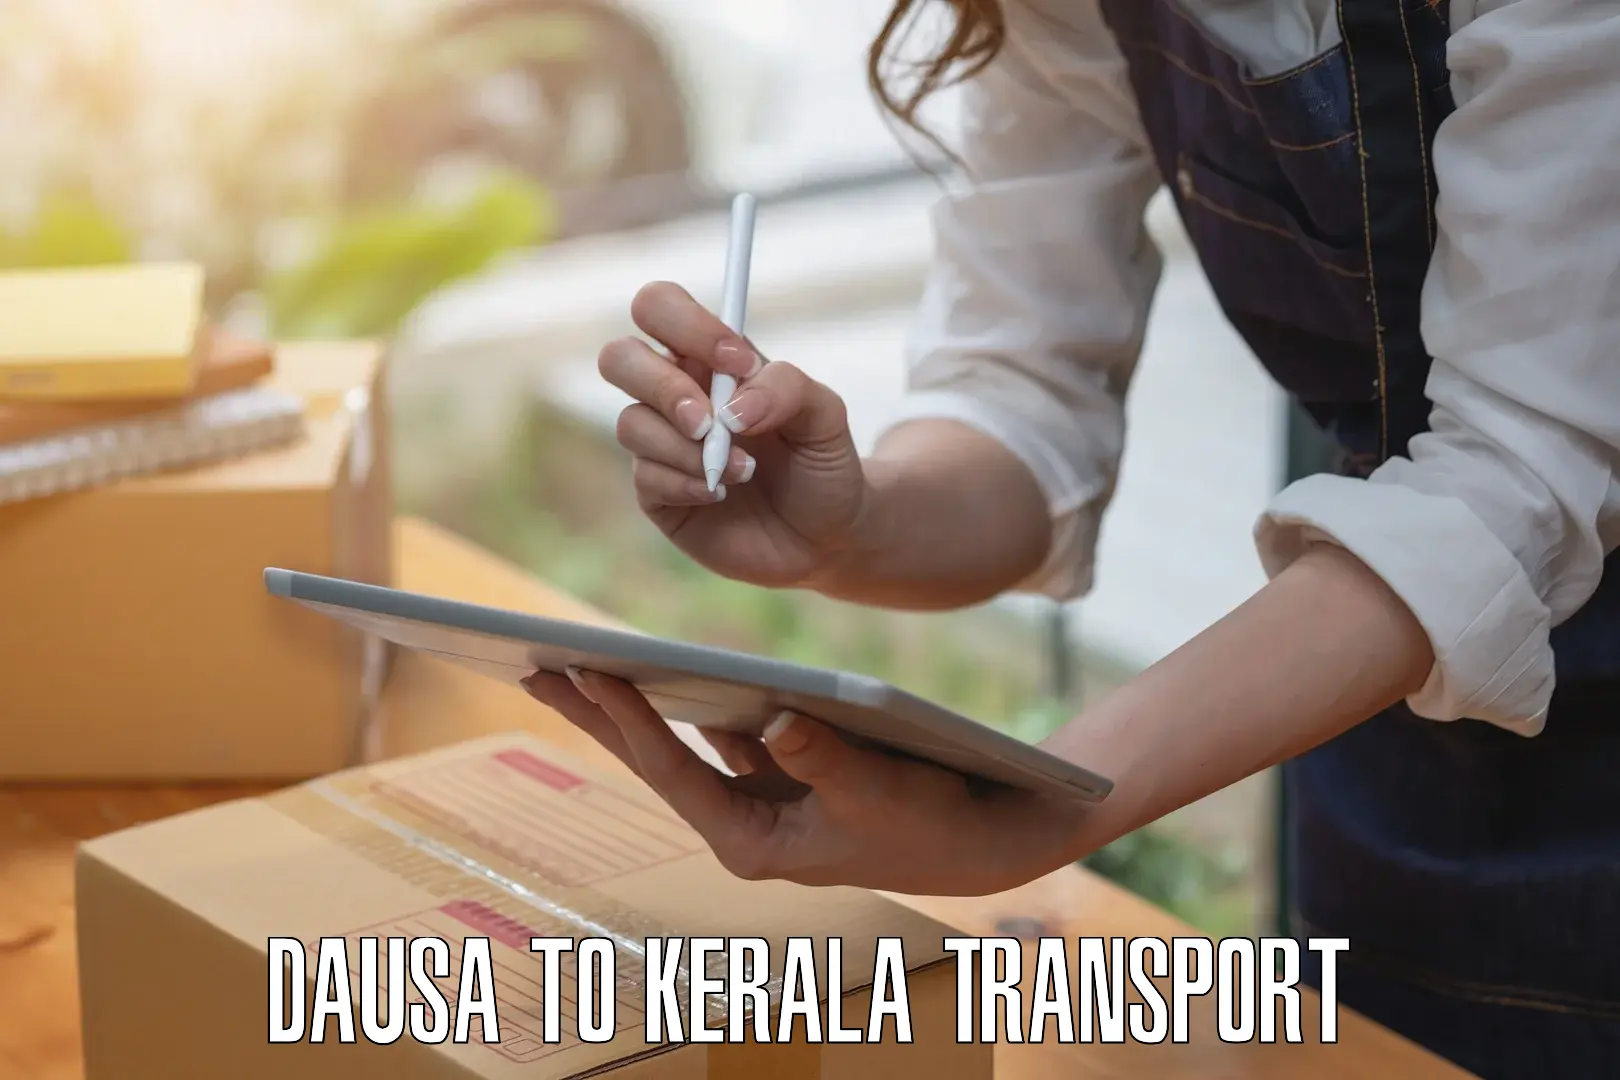 Nearby transport service Dausa to Pandikkad